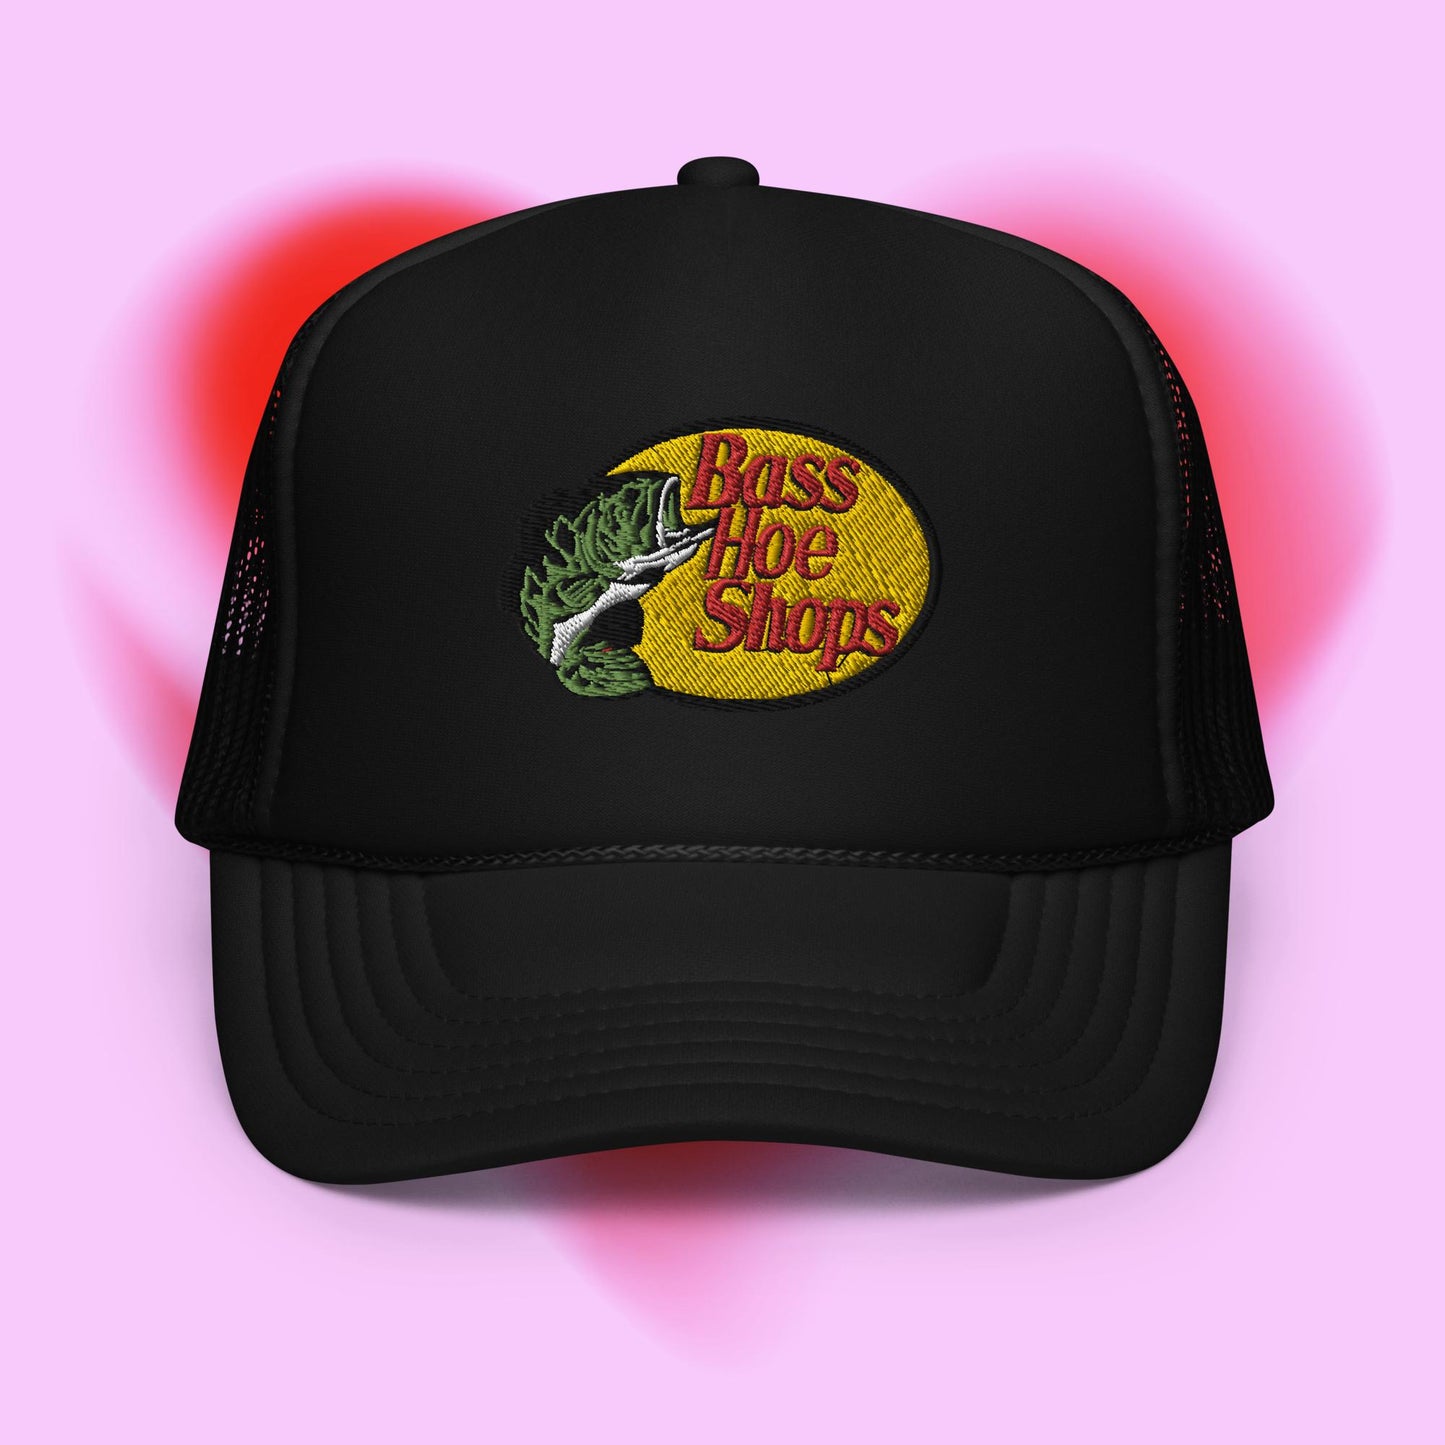 Bass H*e Shops Trucker Hat